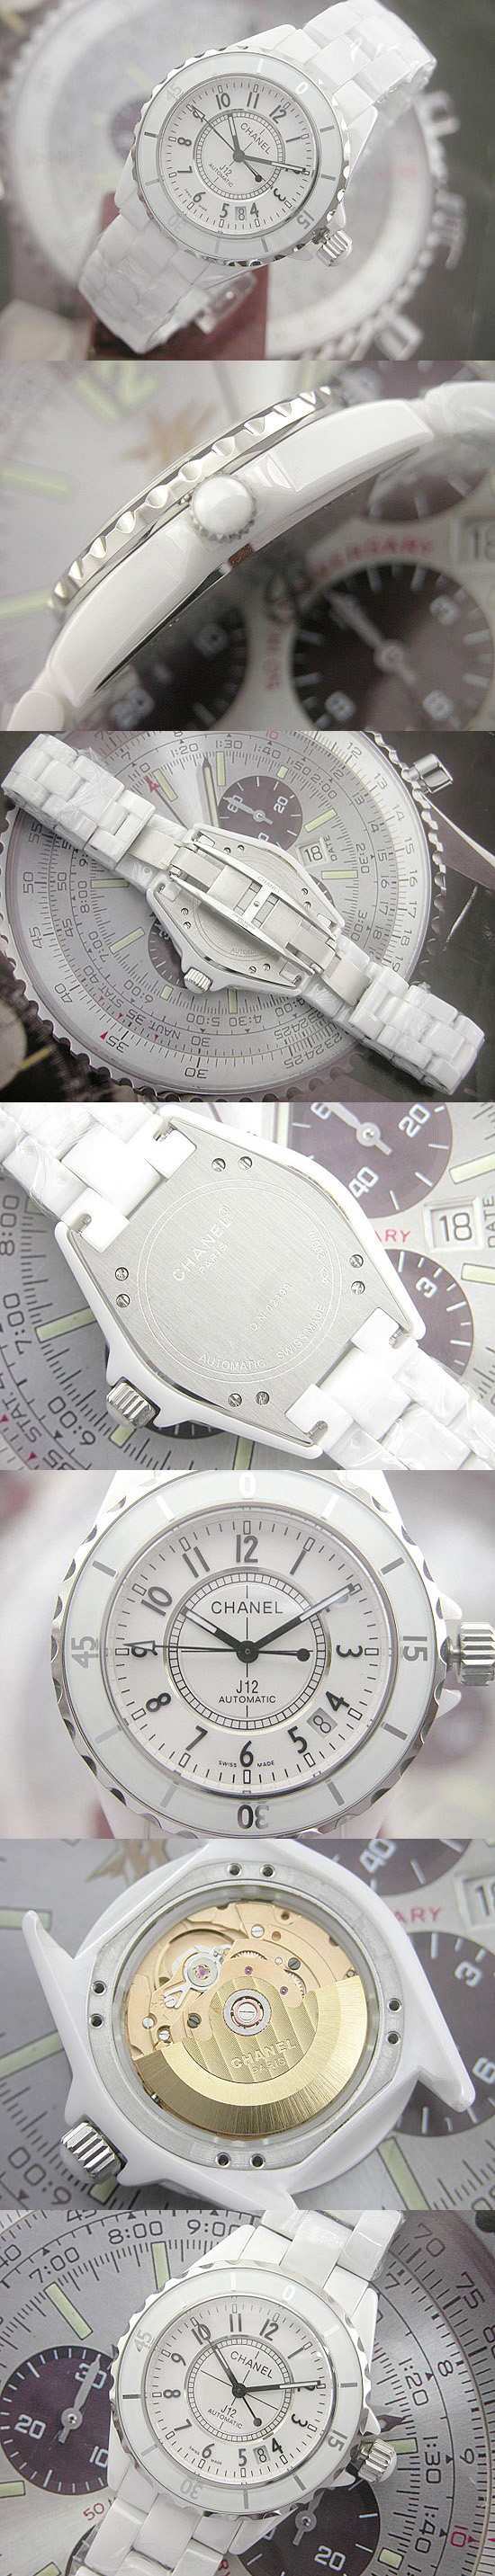 おしゃれなブランド時計がシャネル-CHANEL-H0970-J12-男性用を提供します.